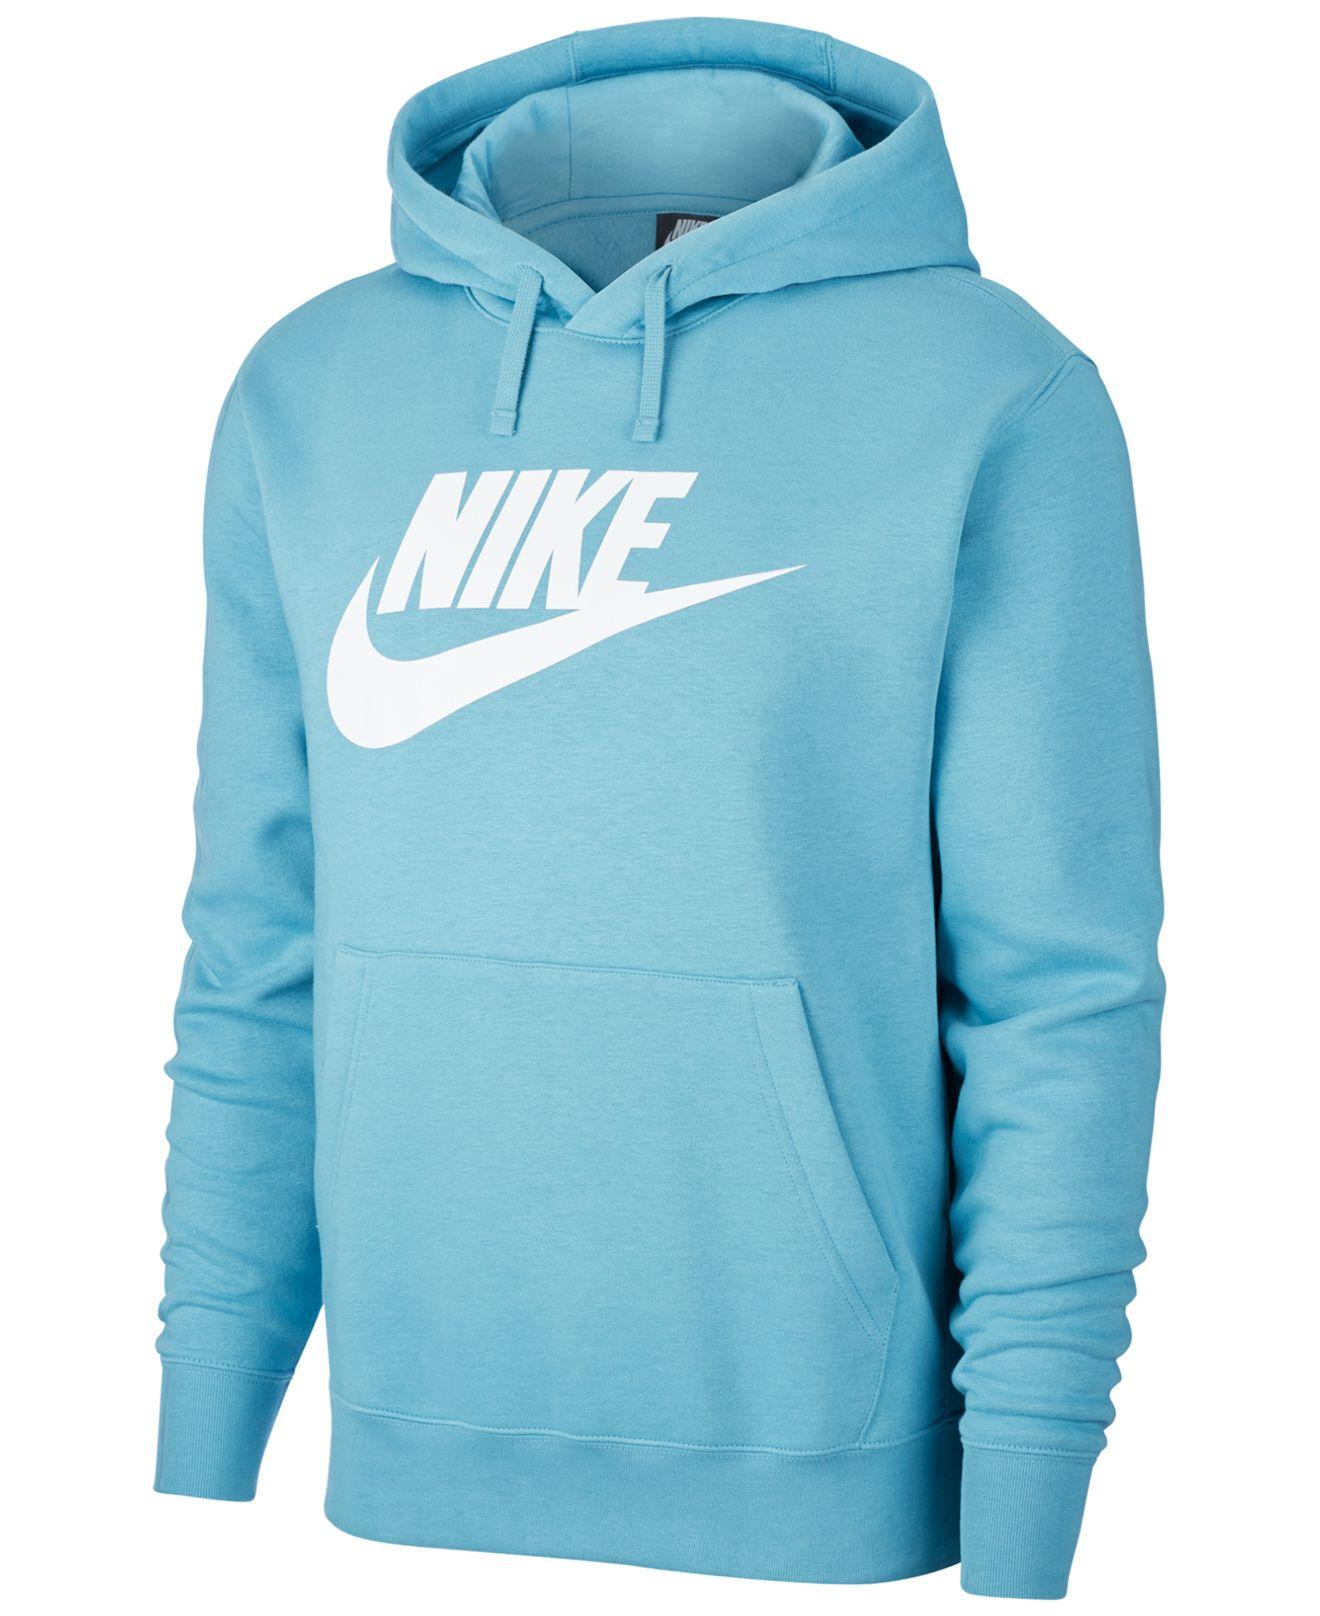 Nike Sportswear Club Fleece Hoodie in Cerulean Blue (Blue) for Men - Lyst